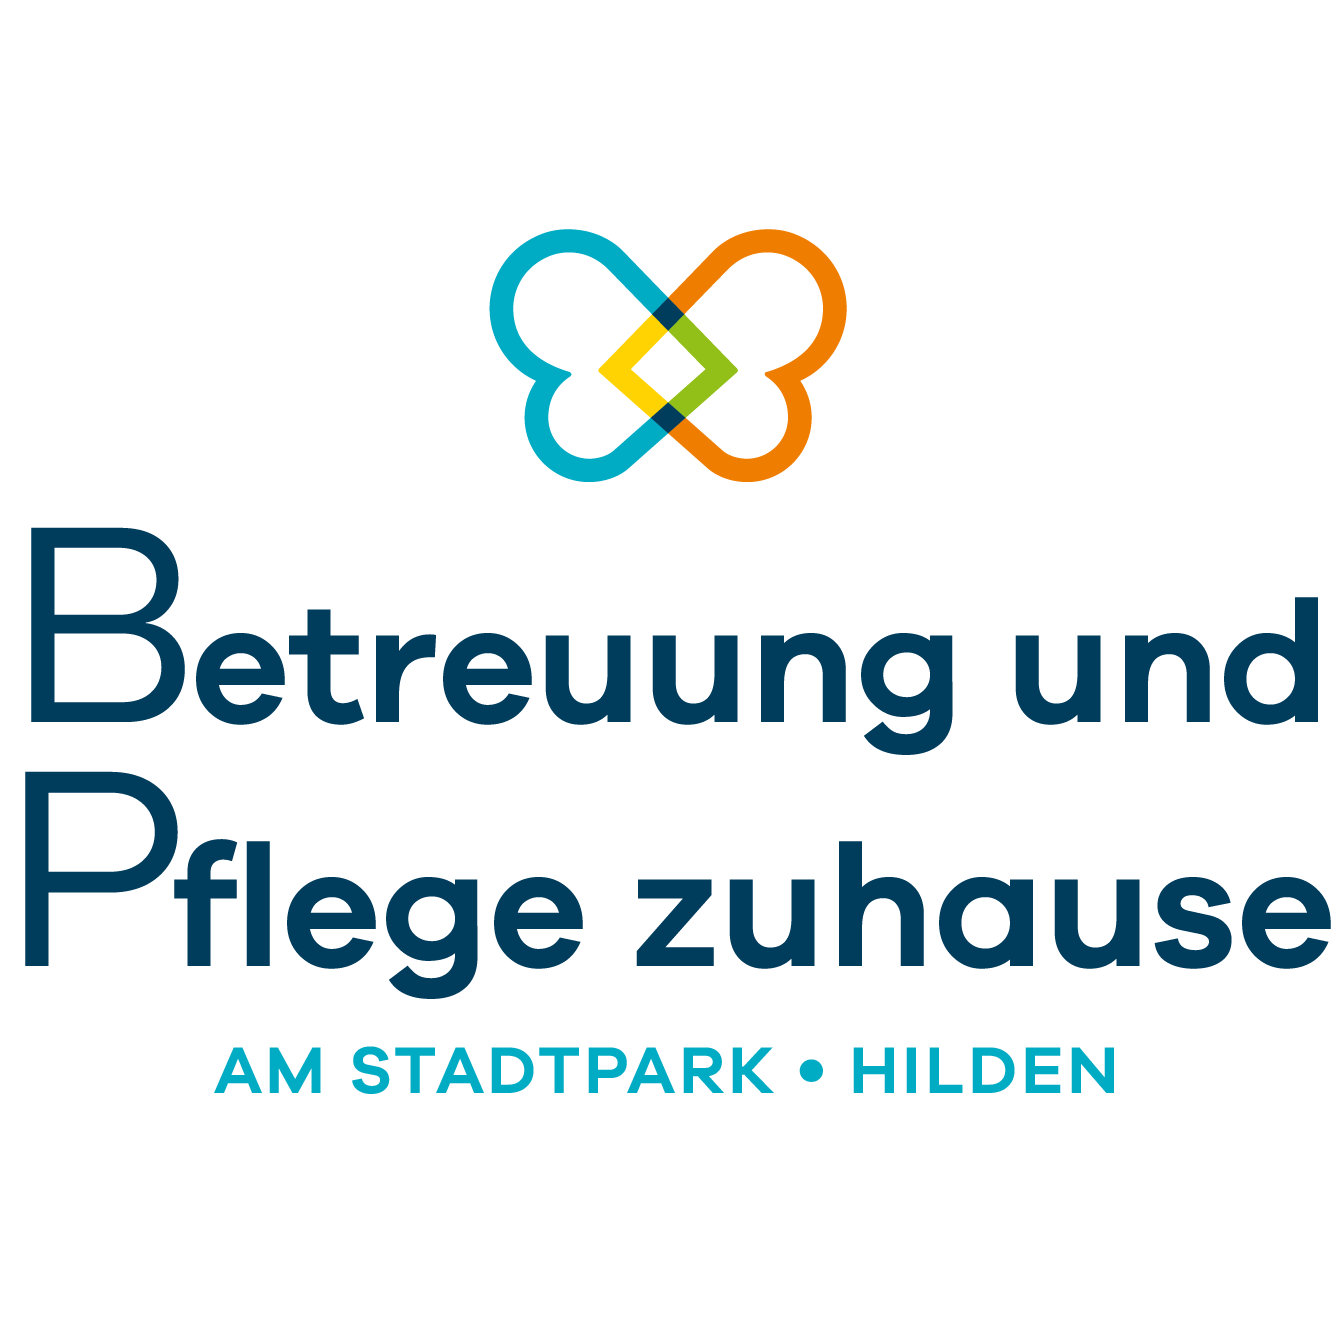 Betreuung und Pflege zuhause am Stadtpark Hilden Logo